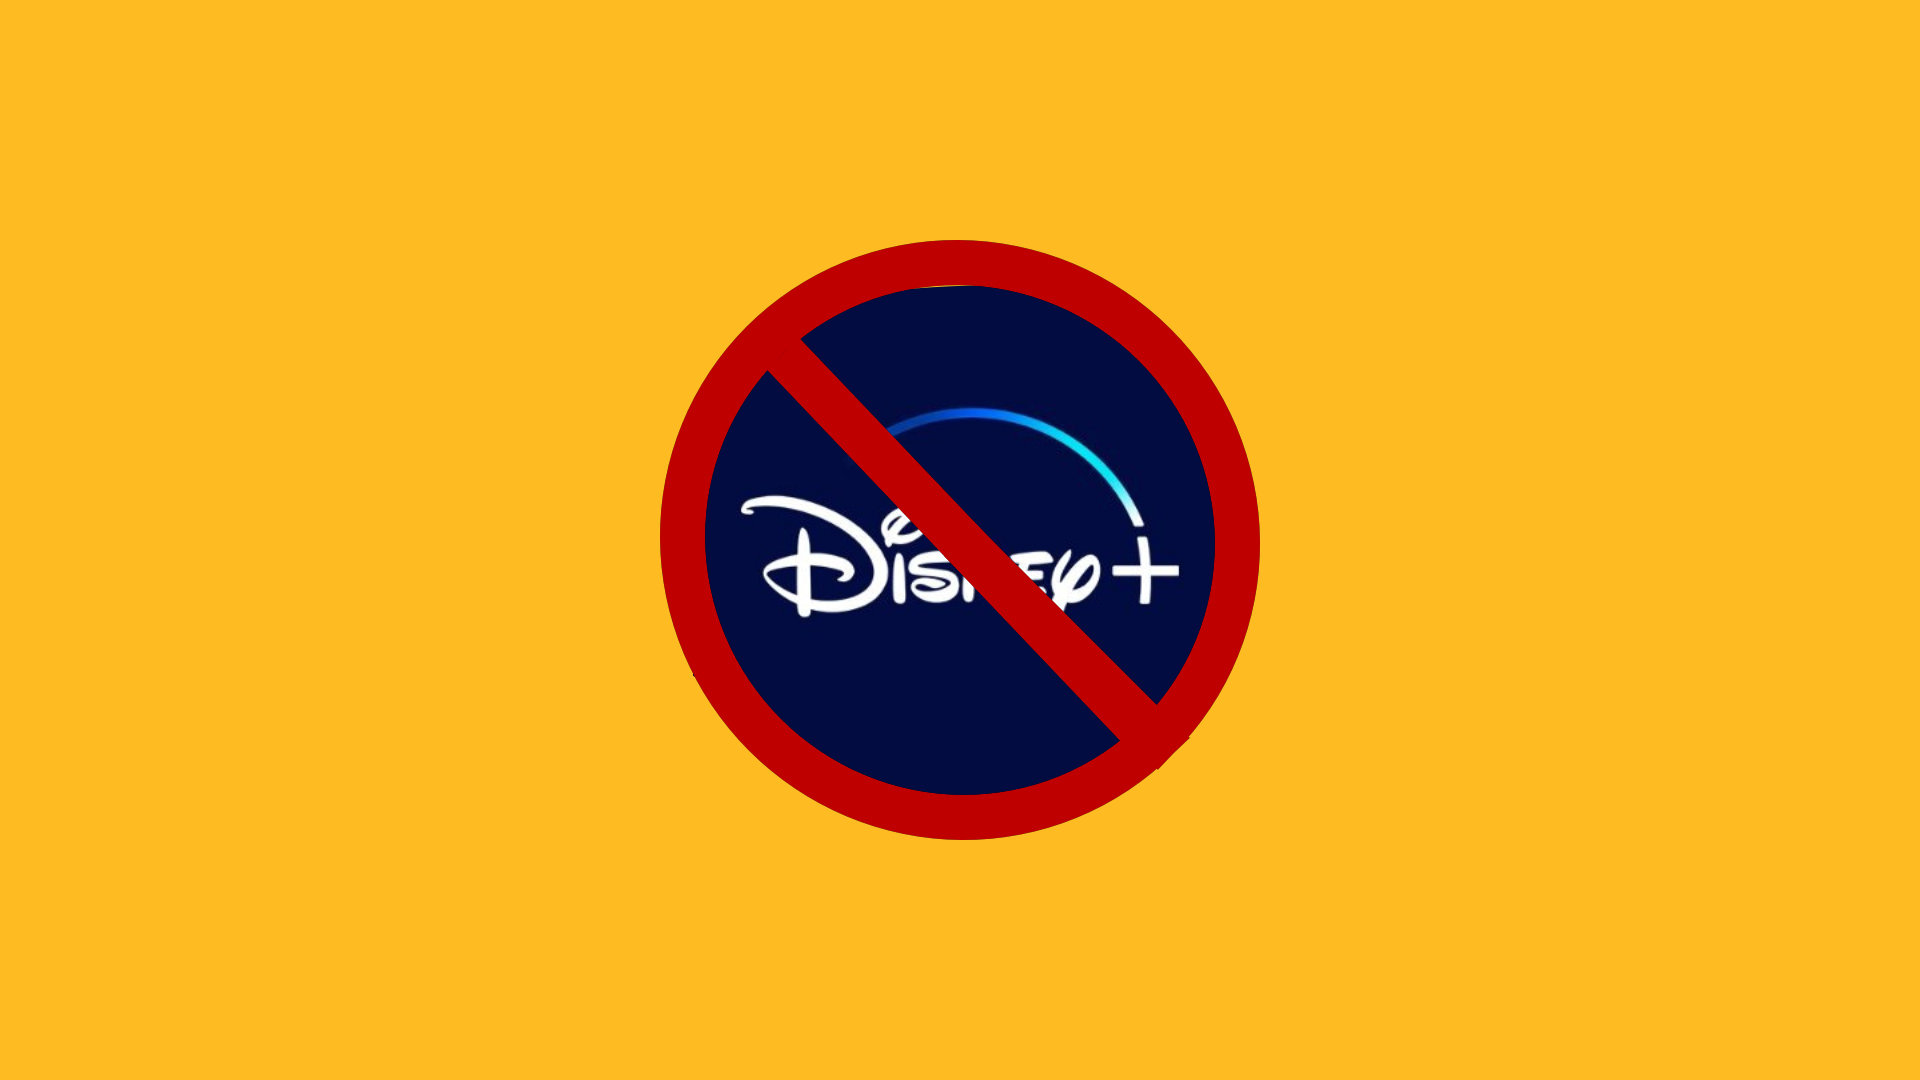 How to cancel Disney Plus